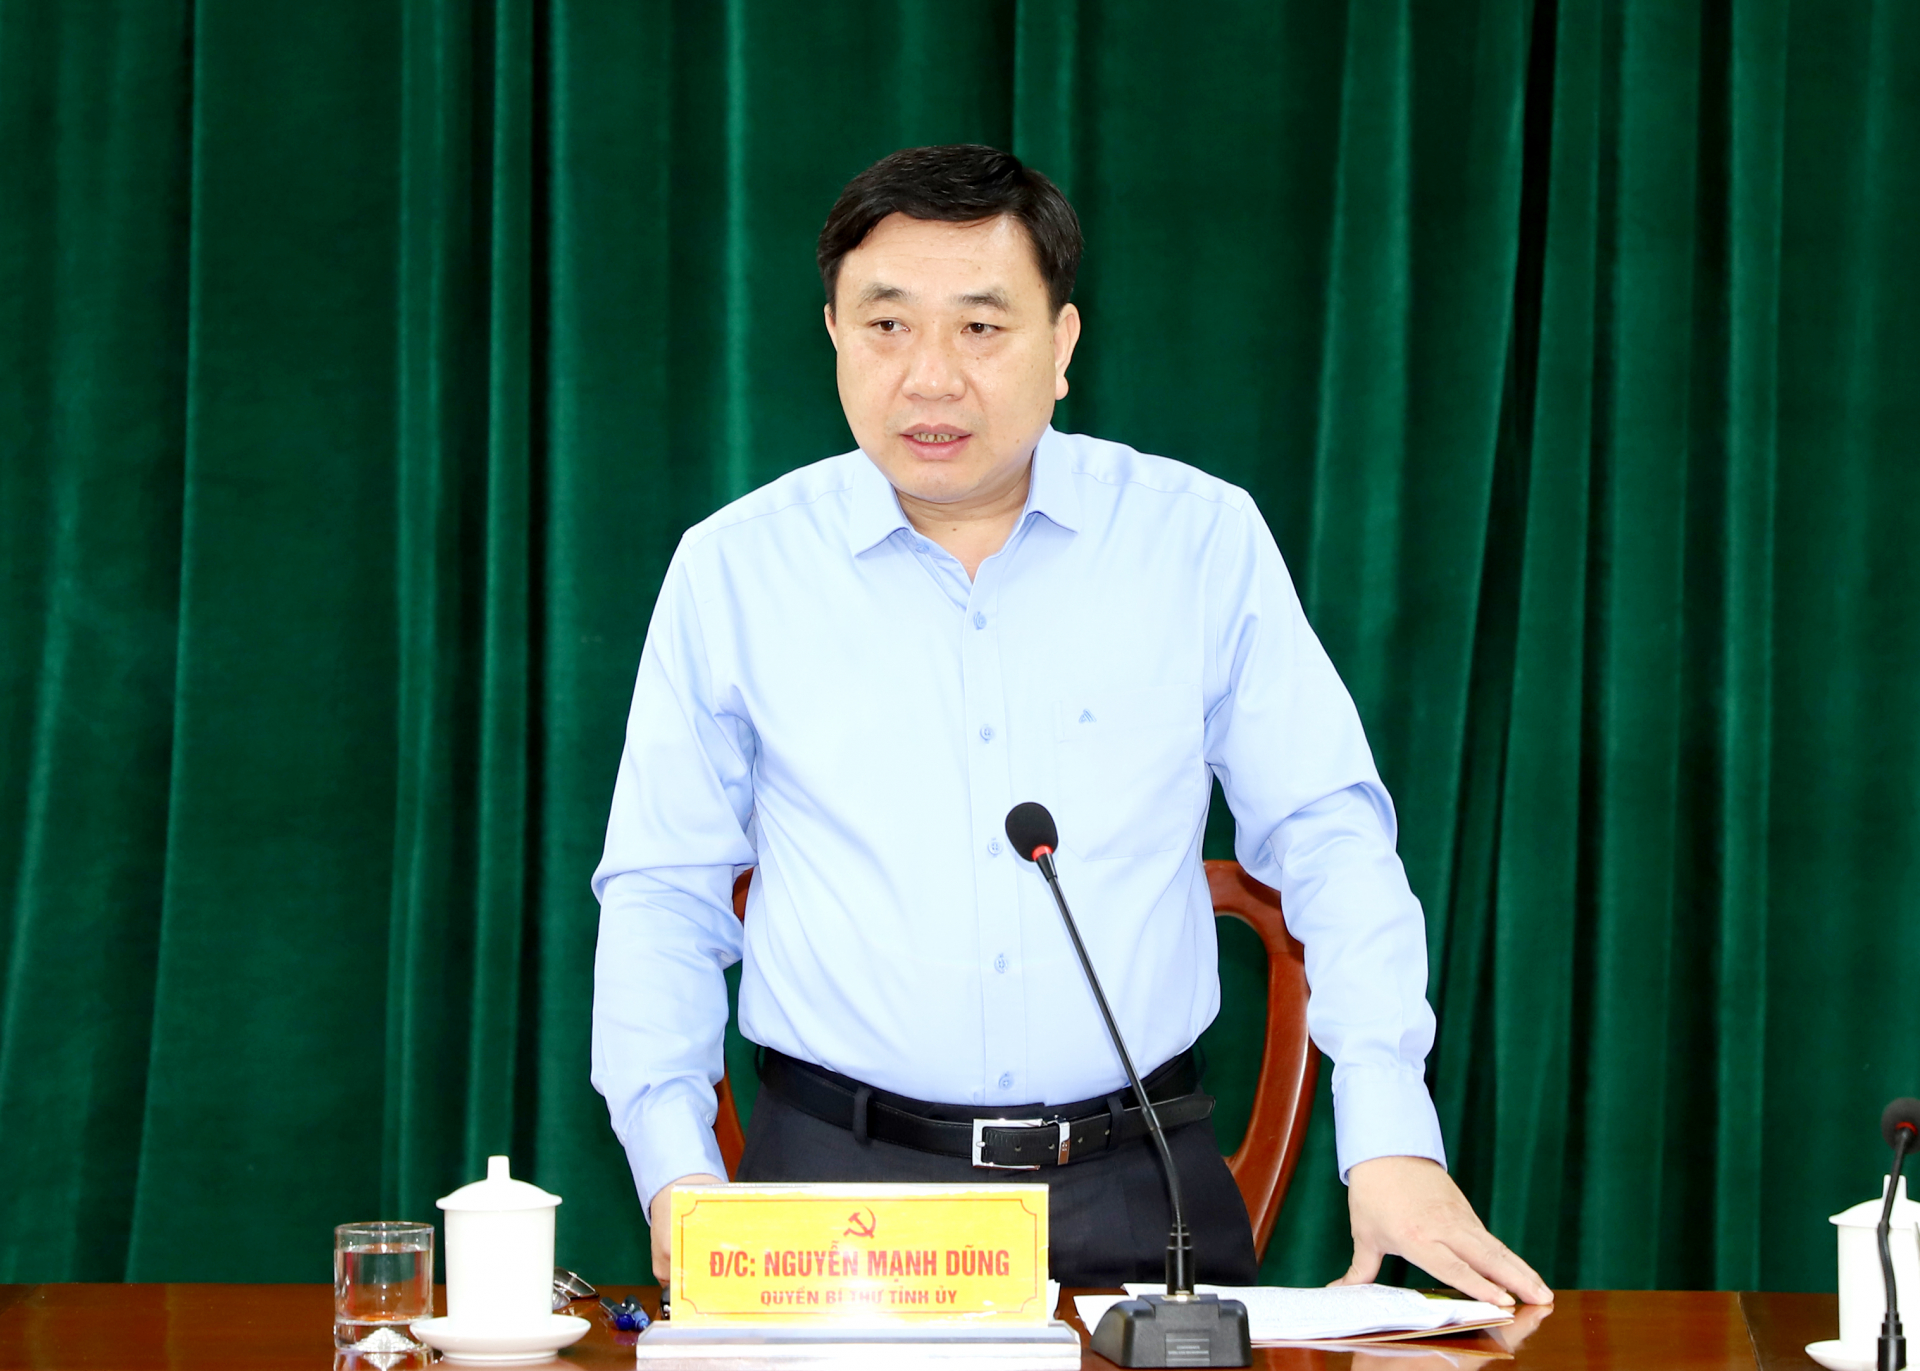 Quyền Bí thư Tỉnh ủy Nguyễn Mạnh Dũng phát biểu kết luận buổi làm việc.